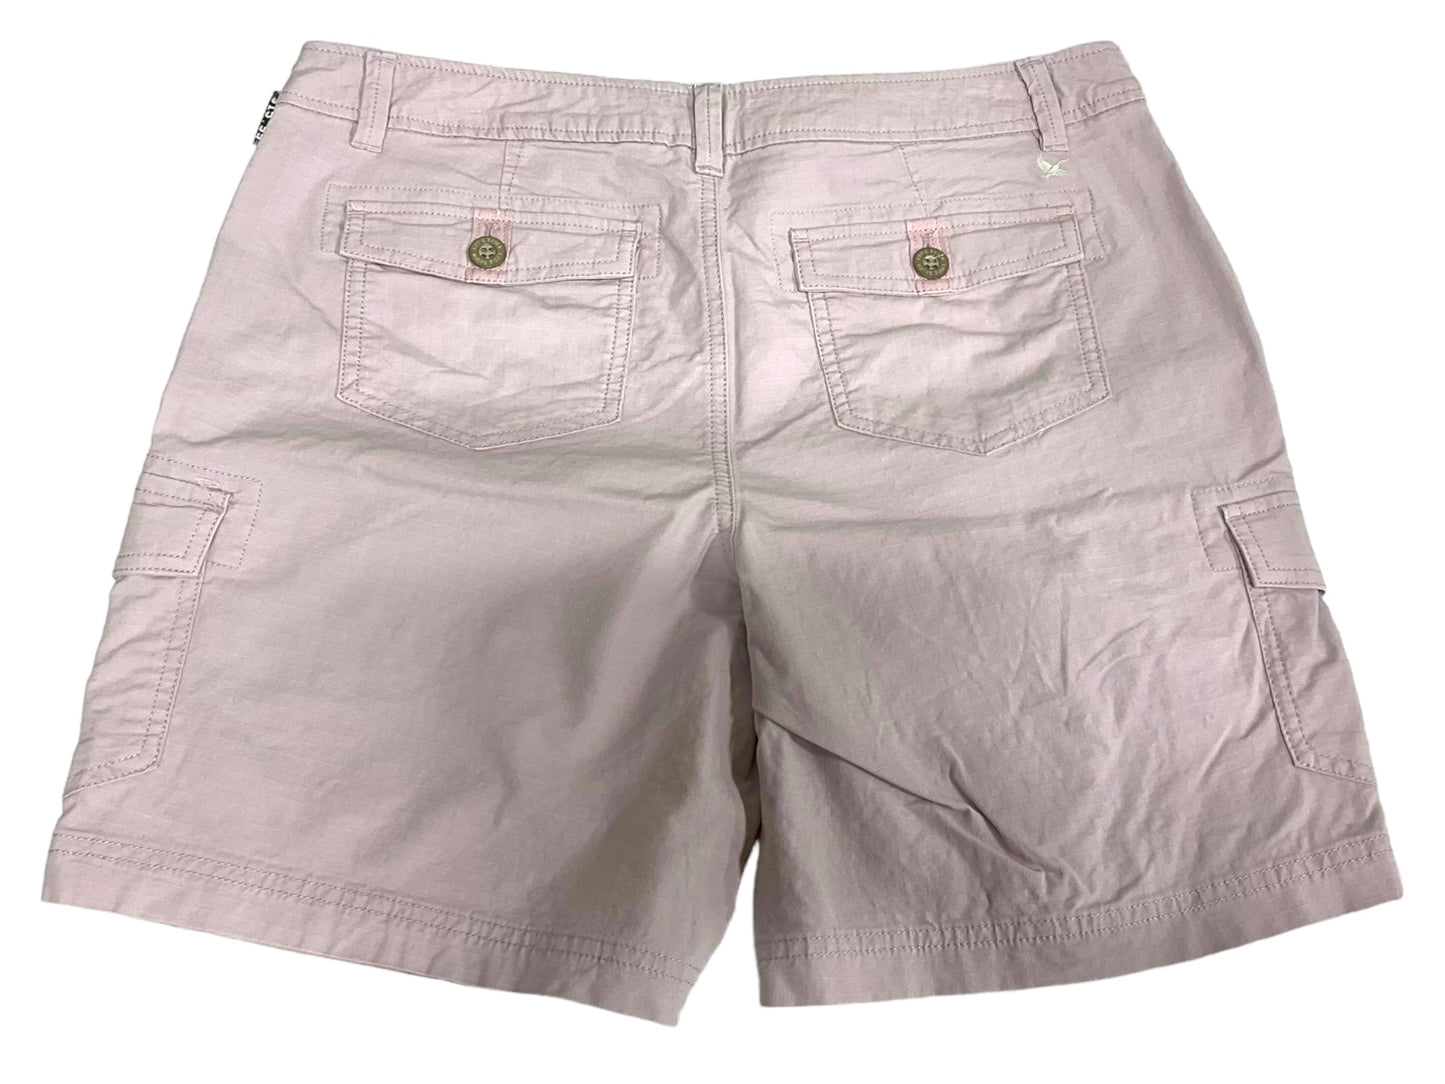 Pink Shorts Eddie Bauer, Size 8